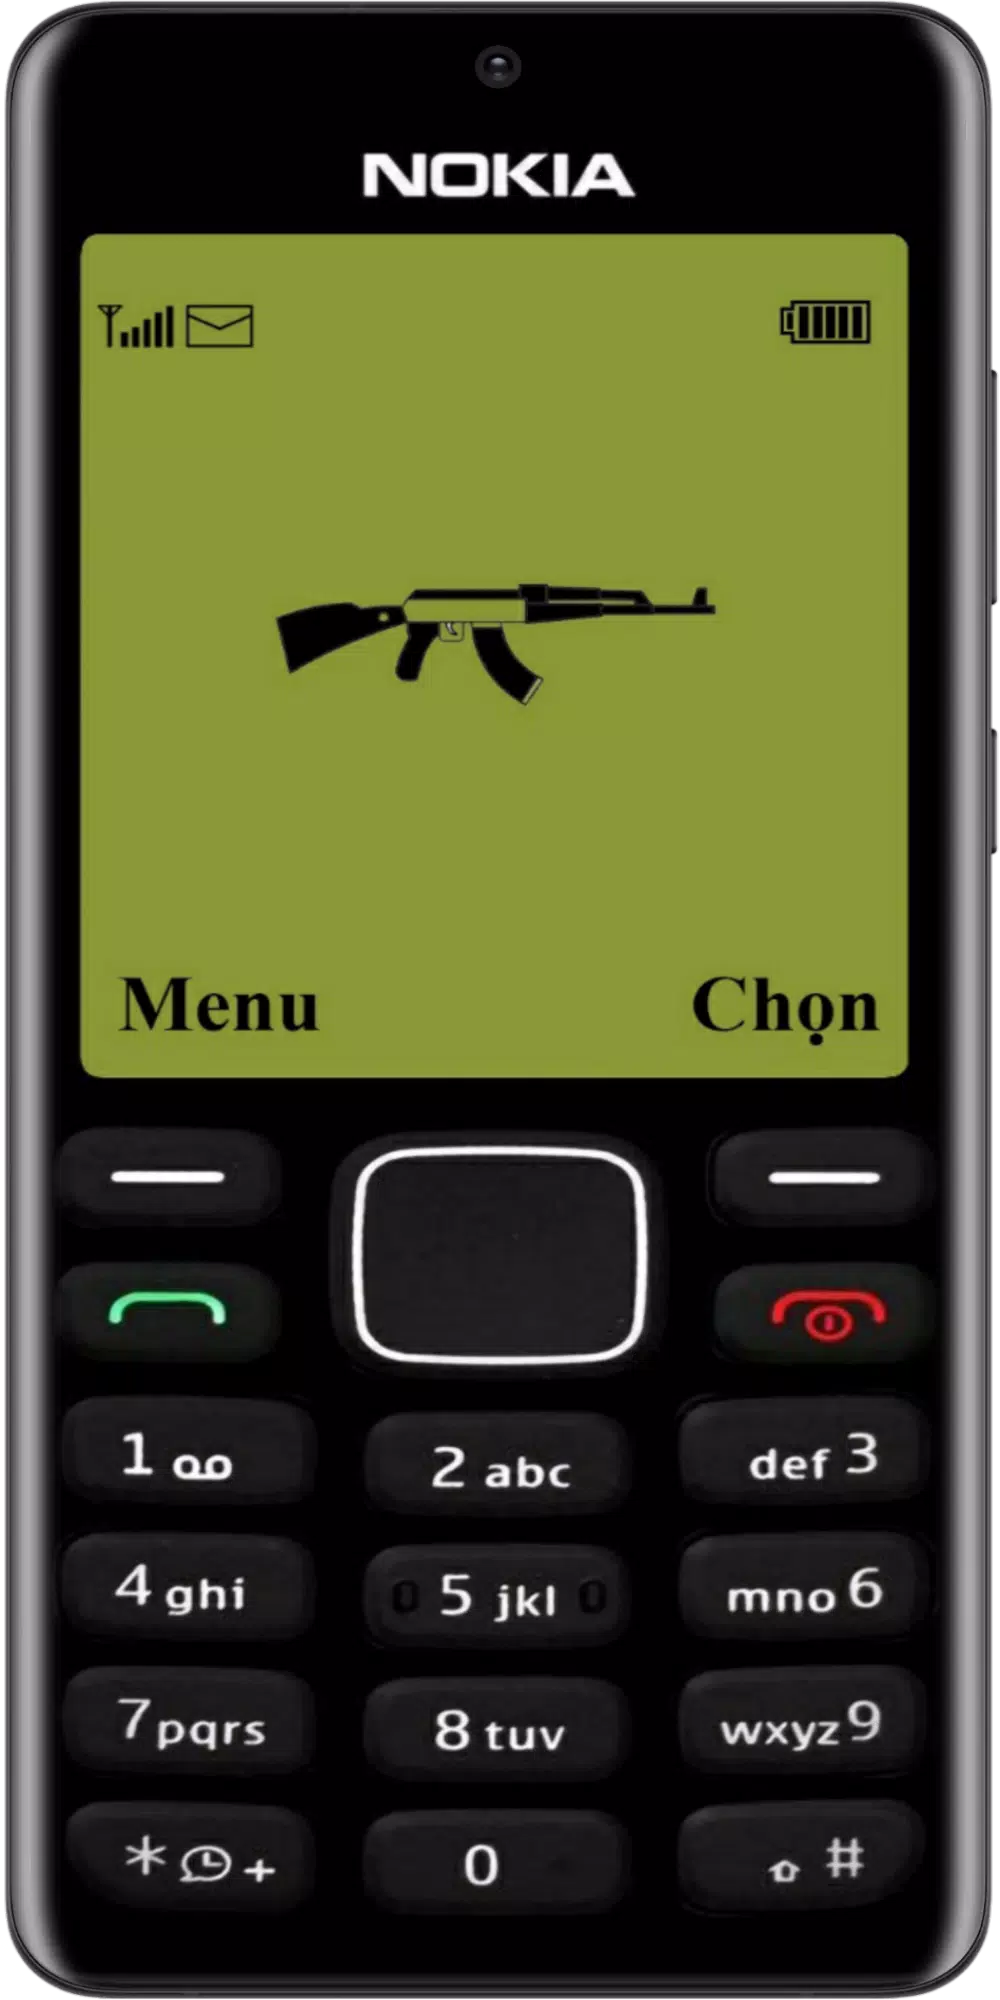 APK Simulator for Old Nokia - Prank là ứng dụng độc đáo để tạo ra những trò đùa thú vị với bạn bè của bạn. Với giao diện giống như điện thoại Nokia cổ điển và các chức năng giống như điện thoại cũ, bạn có thể tự tin chơi trò đùa vui vẻ với bạn bè của mình. Hãy tải ngay ứng dụng này và cùng khám phá thế giới trò đùa dí dỏm này nhé.